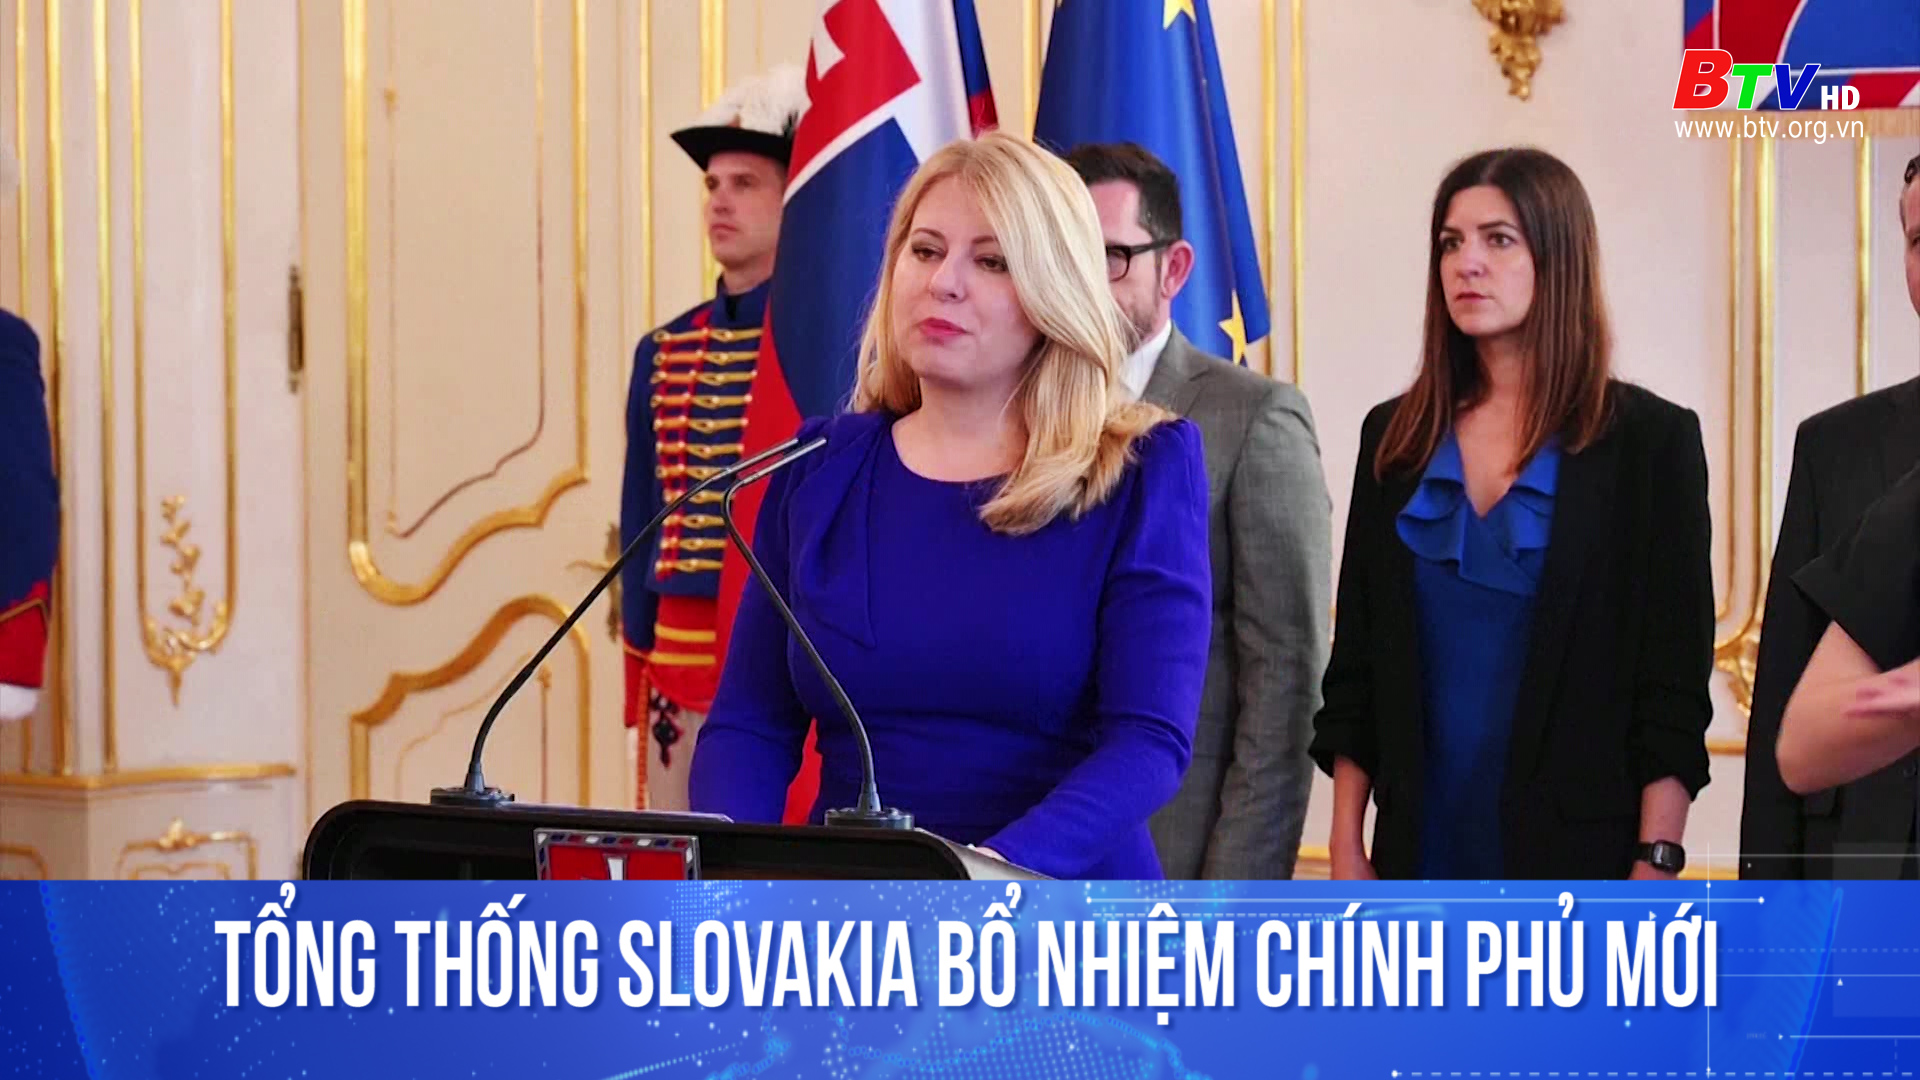 Tổng thống Slovakia bổ nhiệm chính phủ mới